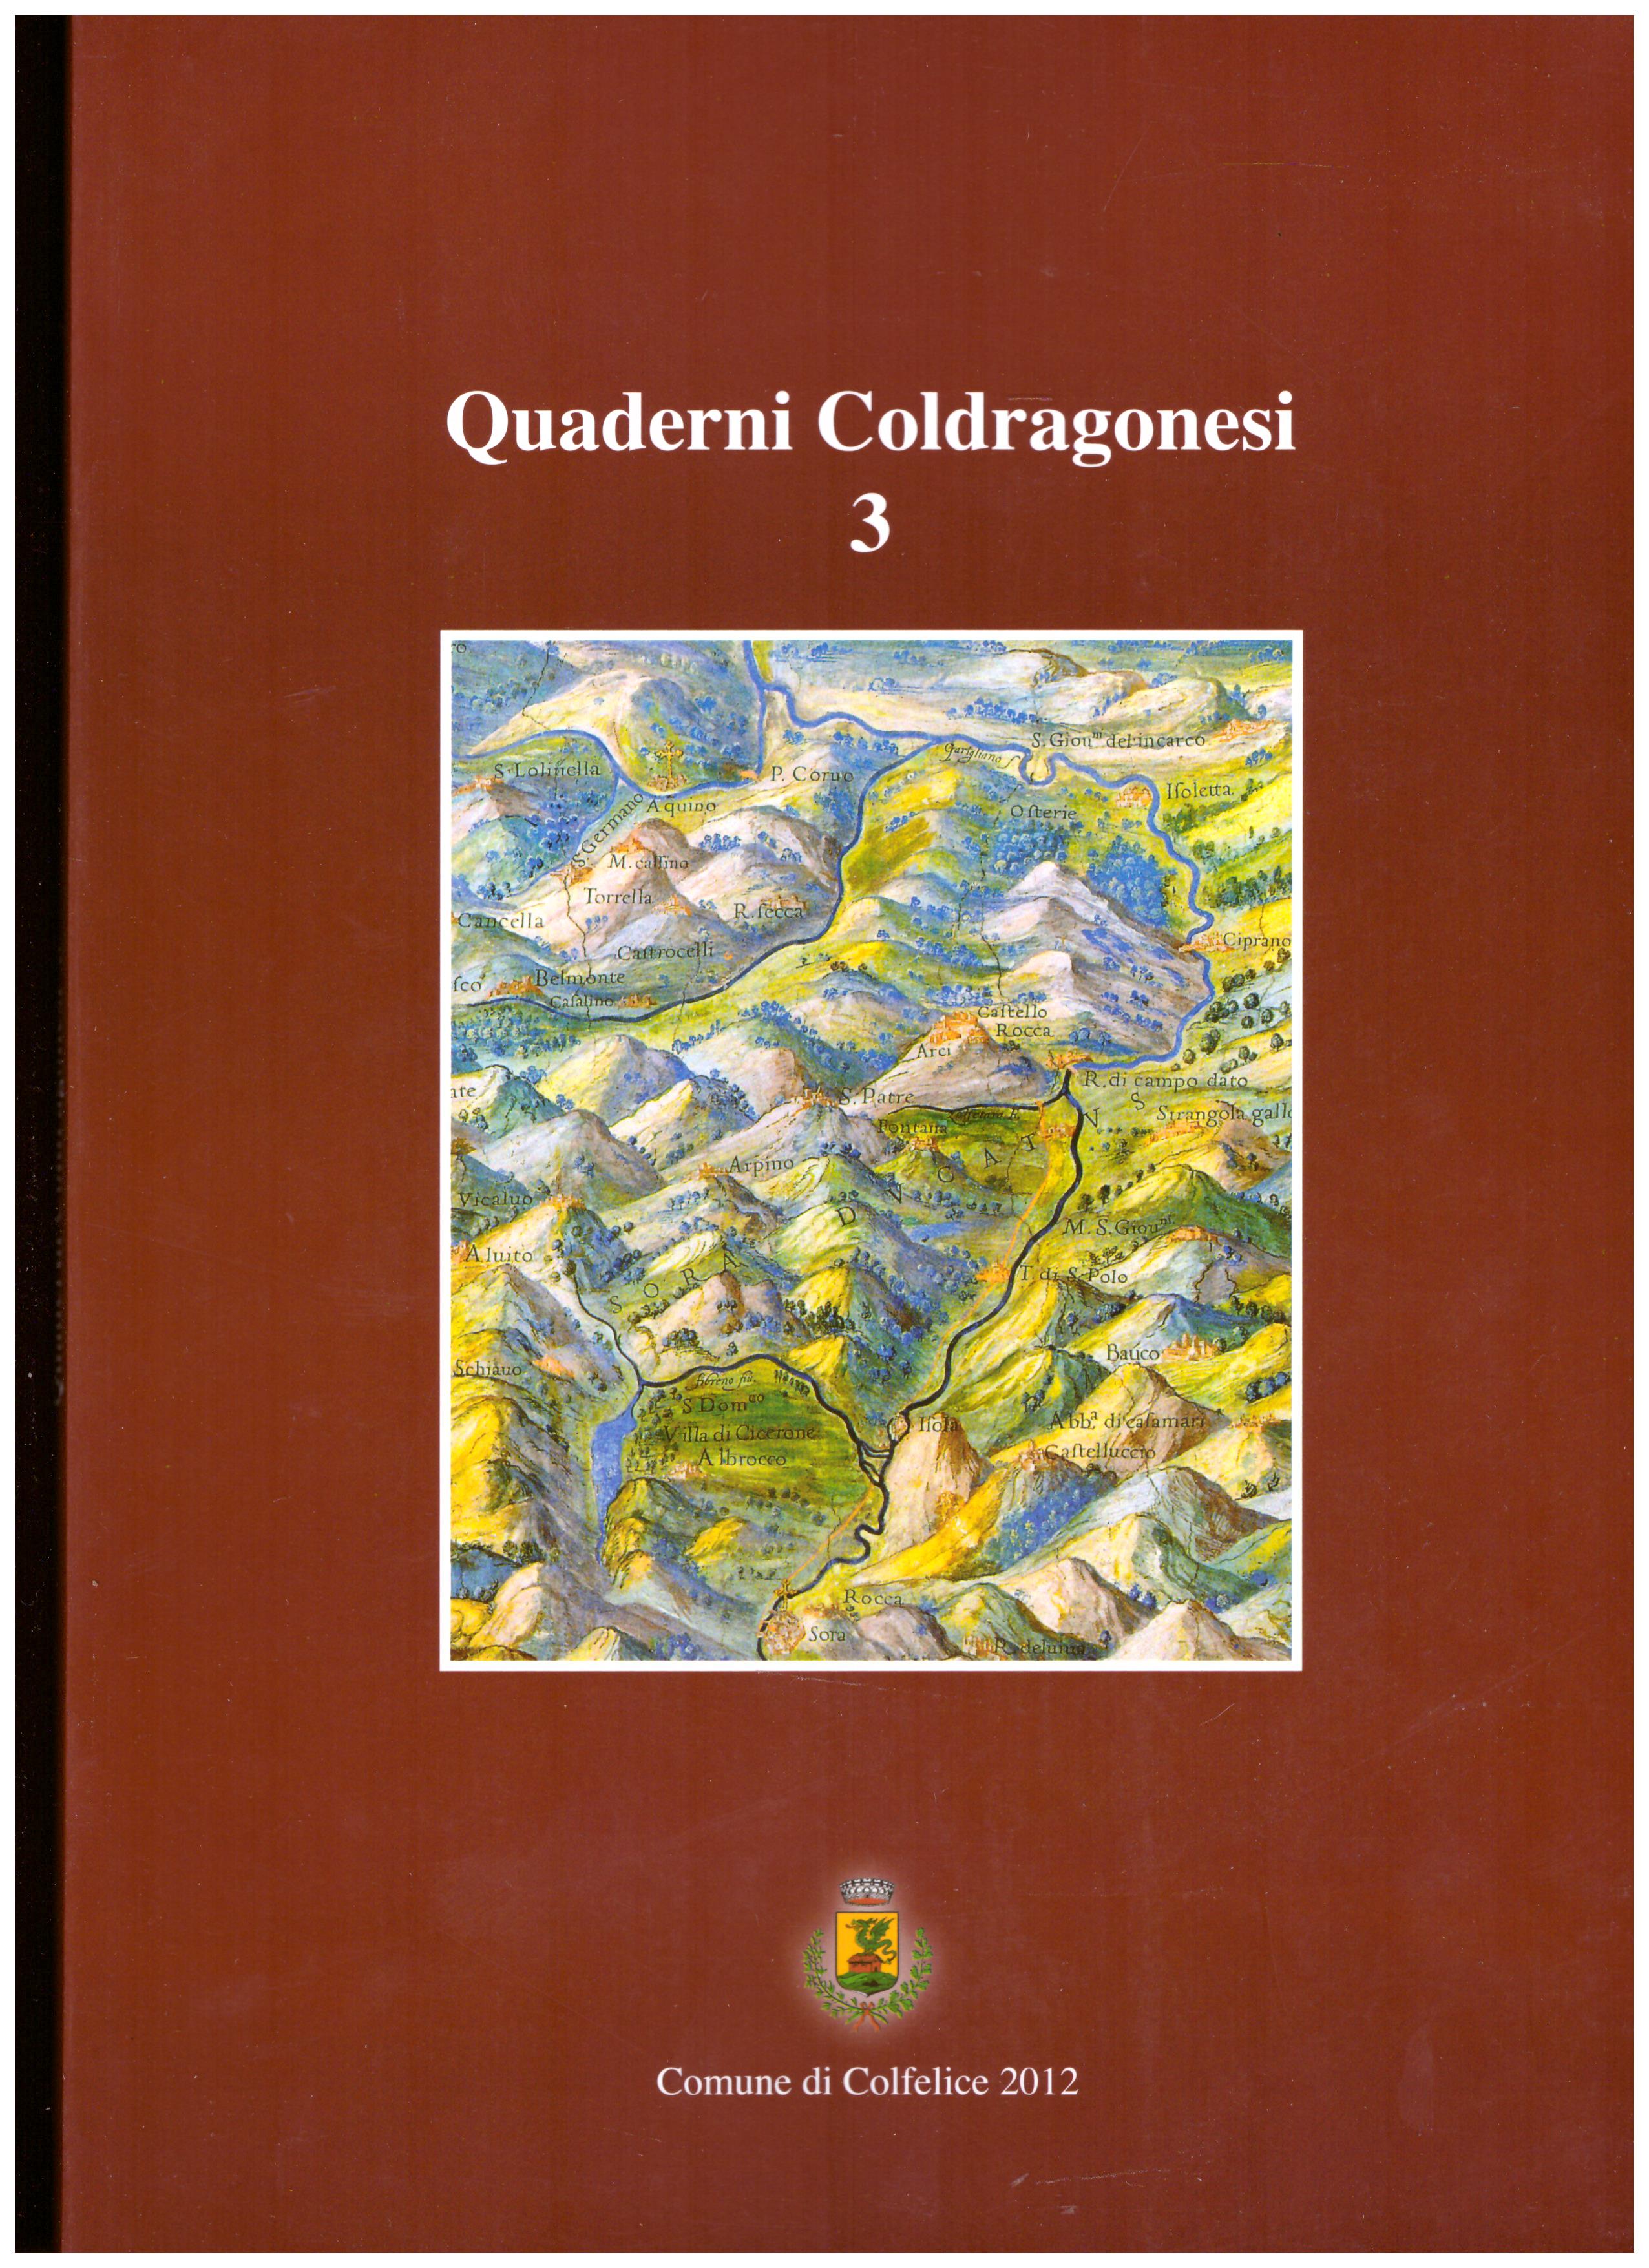 Titolo: Quaderni Coldragonesi 3     Autore: AA.VV.     Editore: Comune di Colfelice 2012